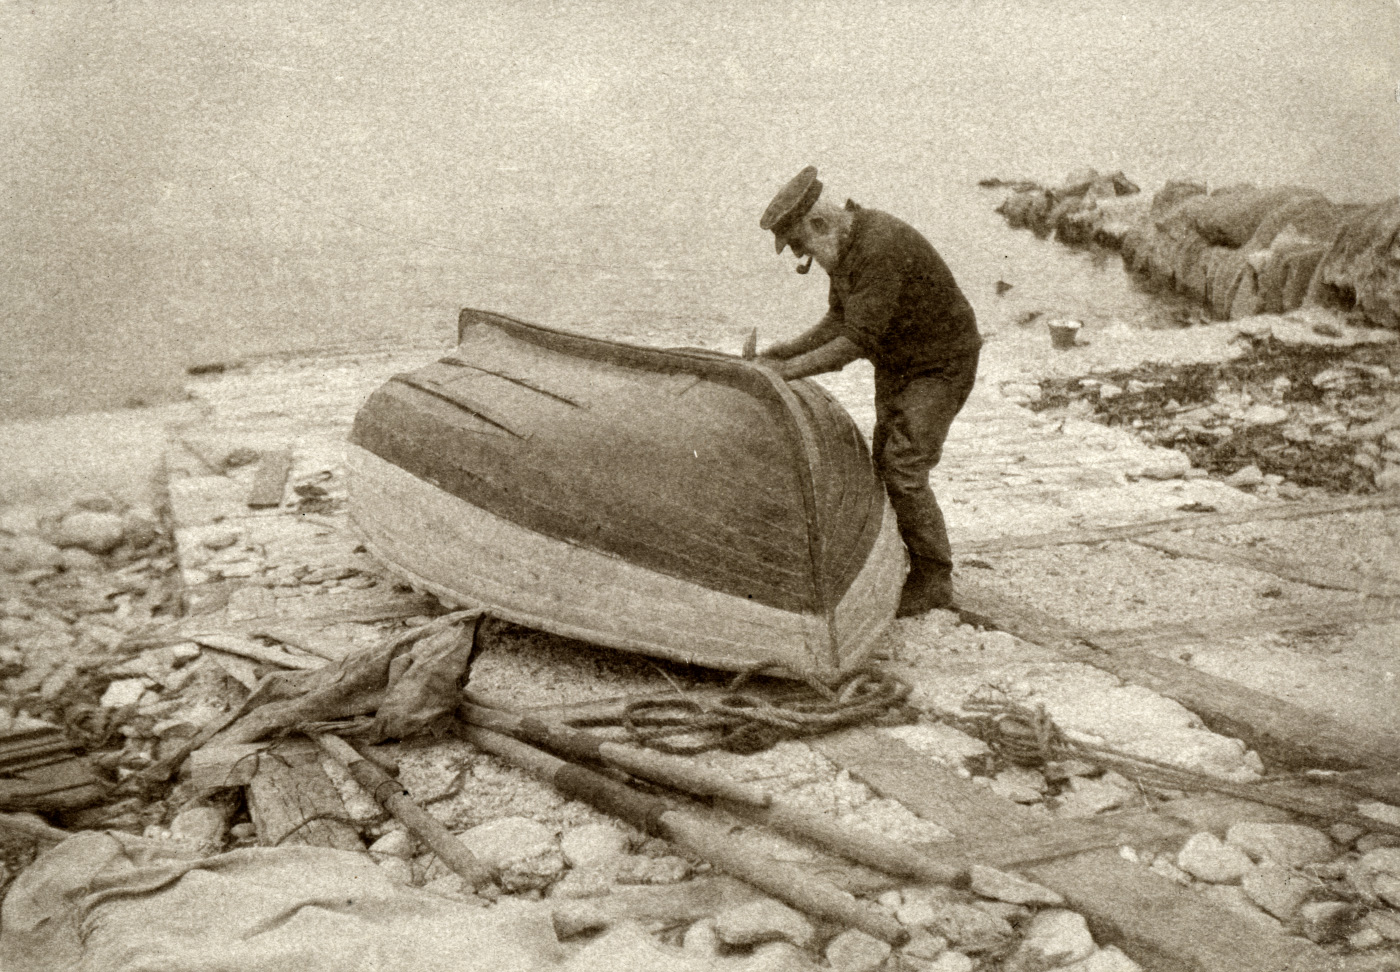 Fisherman repairing his boat in 1928